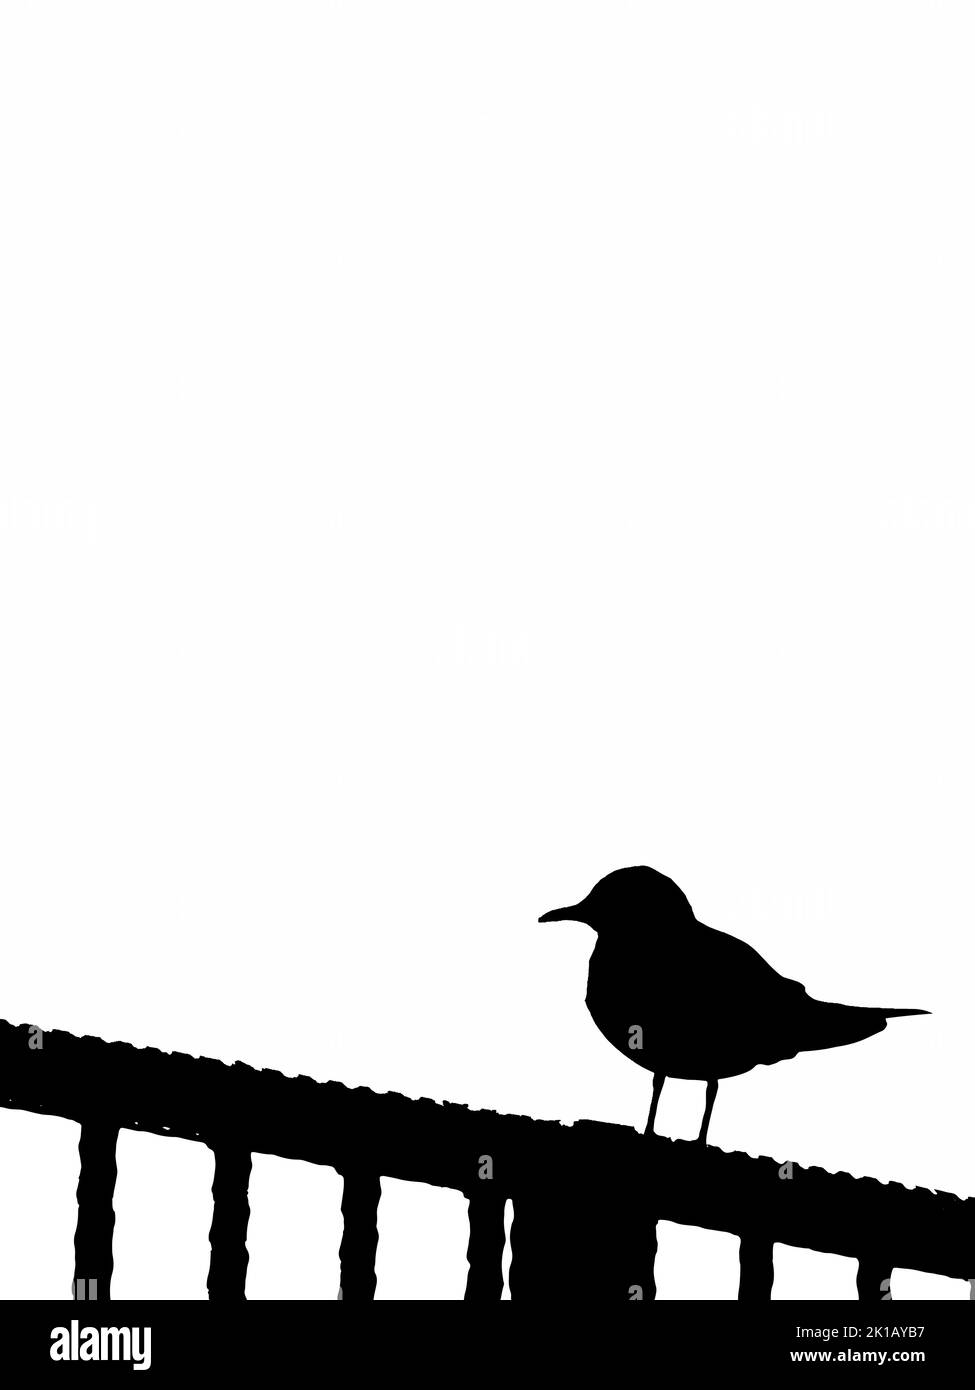 Schwarze Silhouette der Möwe, die auf Geländern auf weißem Hintergrund thront. Silhouette der Möwe. Isolierte Zeichnung. vektordarstellung Stock Vektor